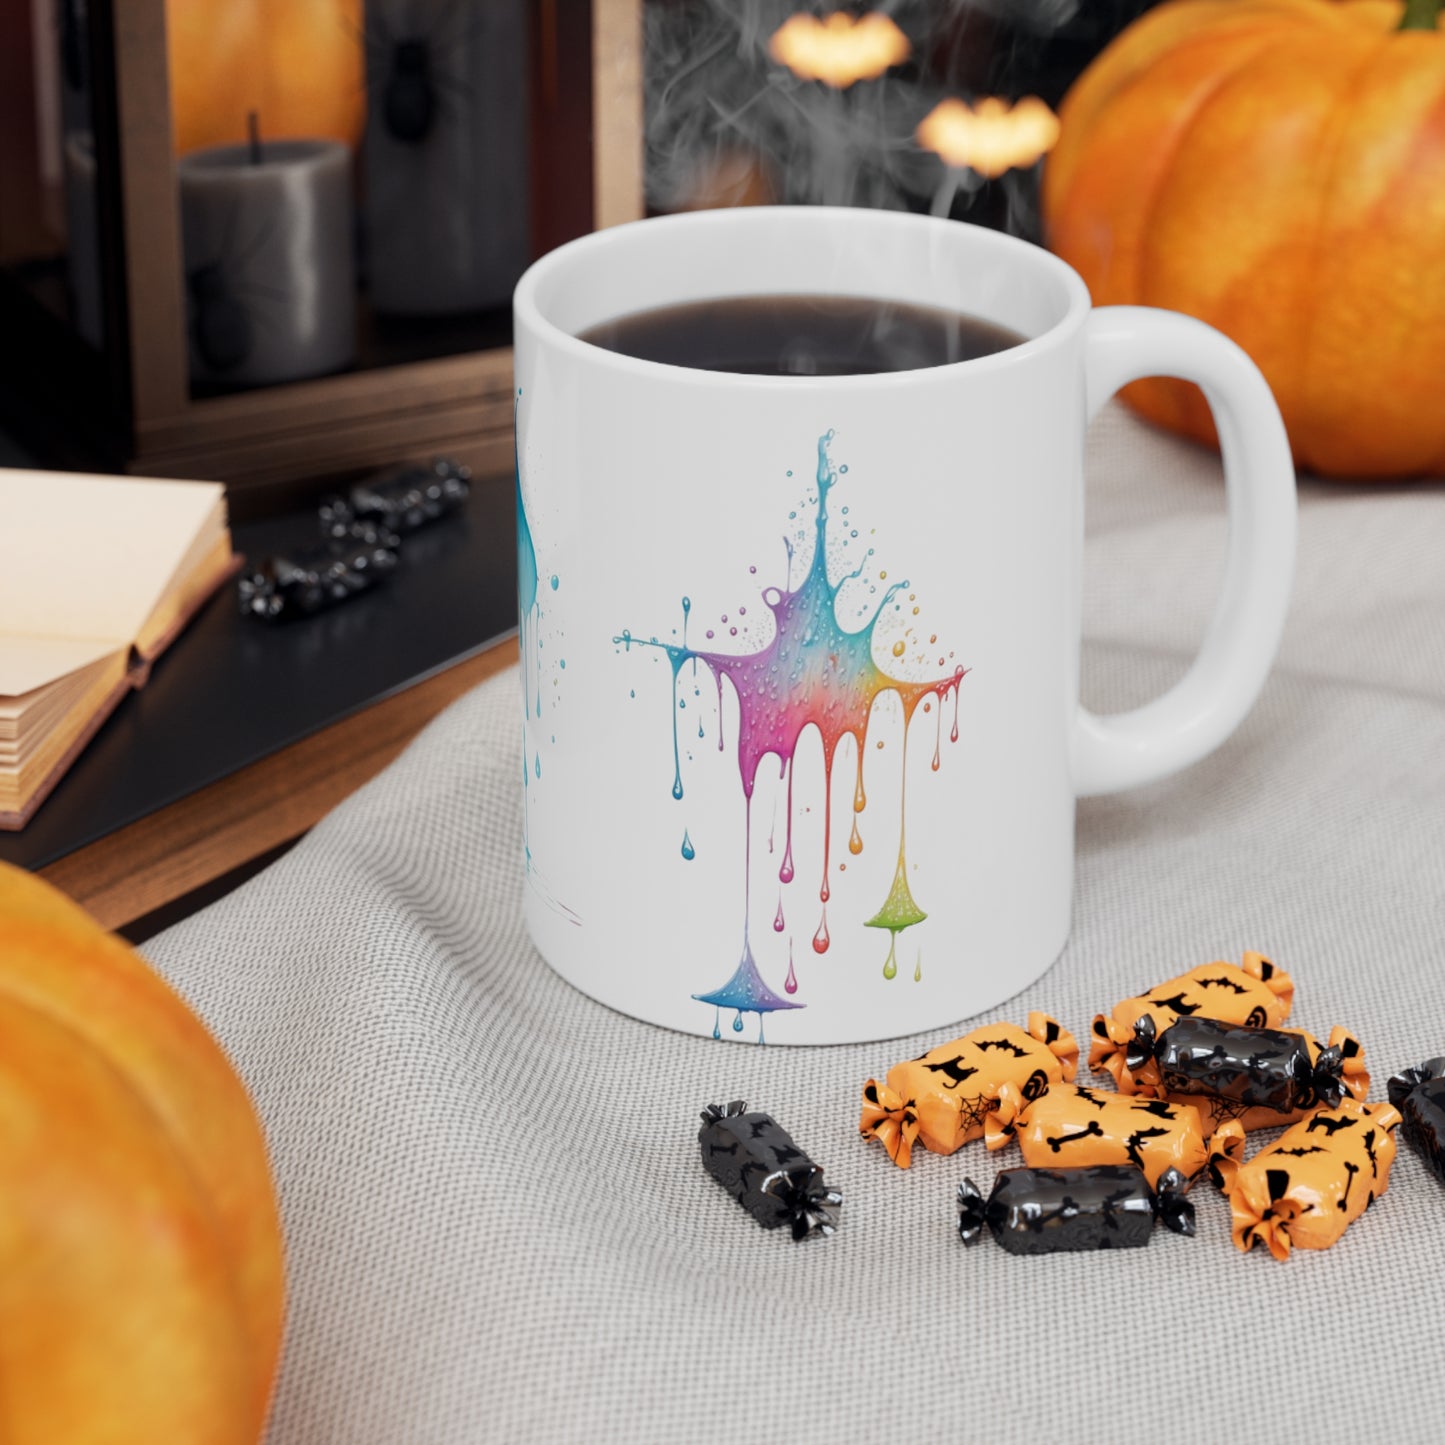 Colourful Messy Raindrops Art Mug - Ceramic Coffee Mug 11oz